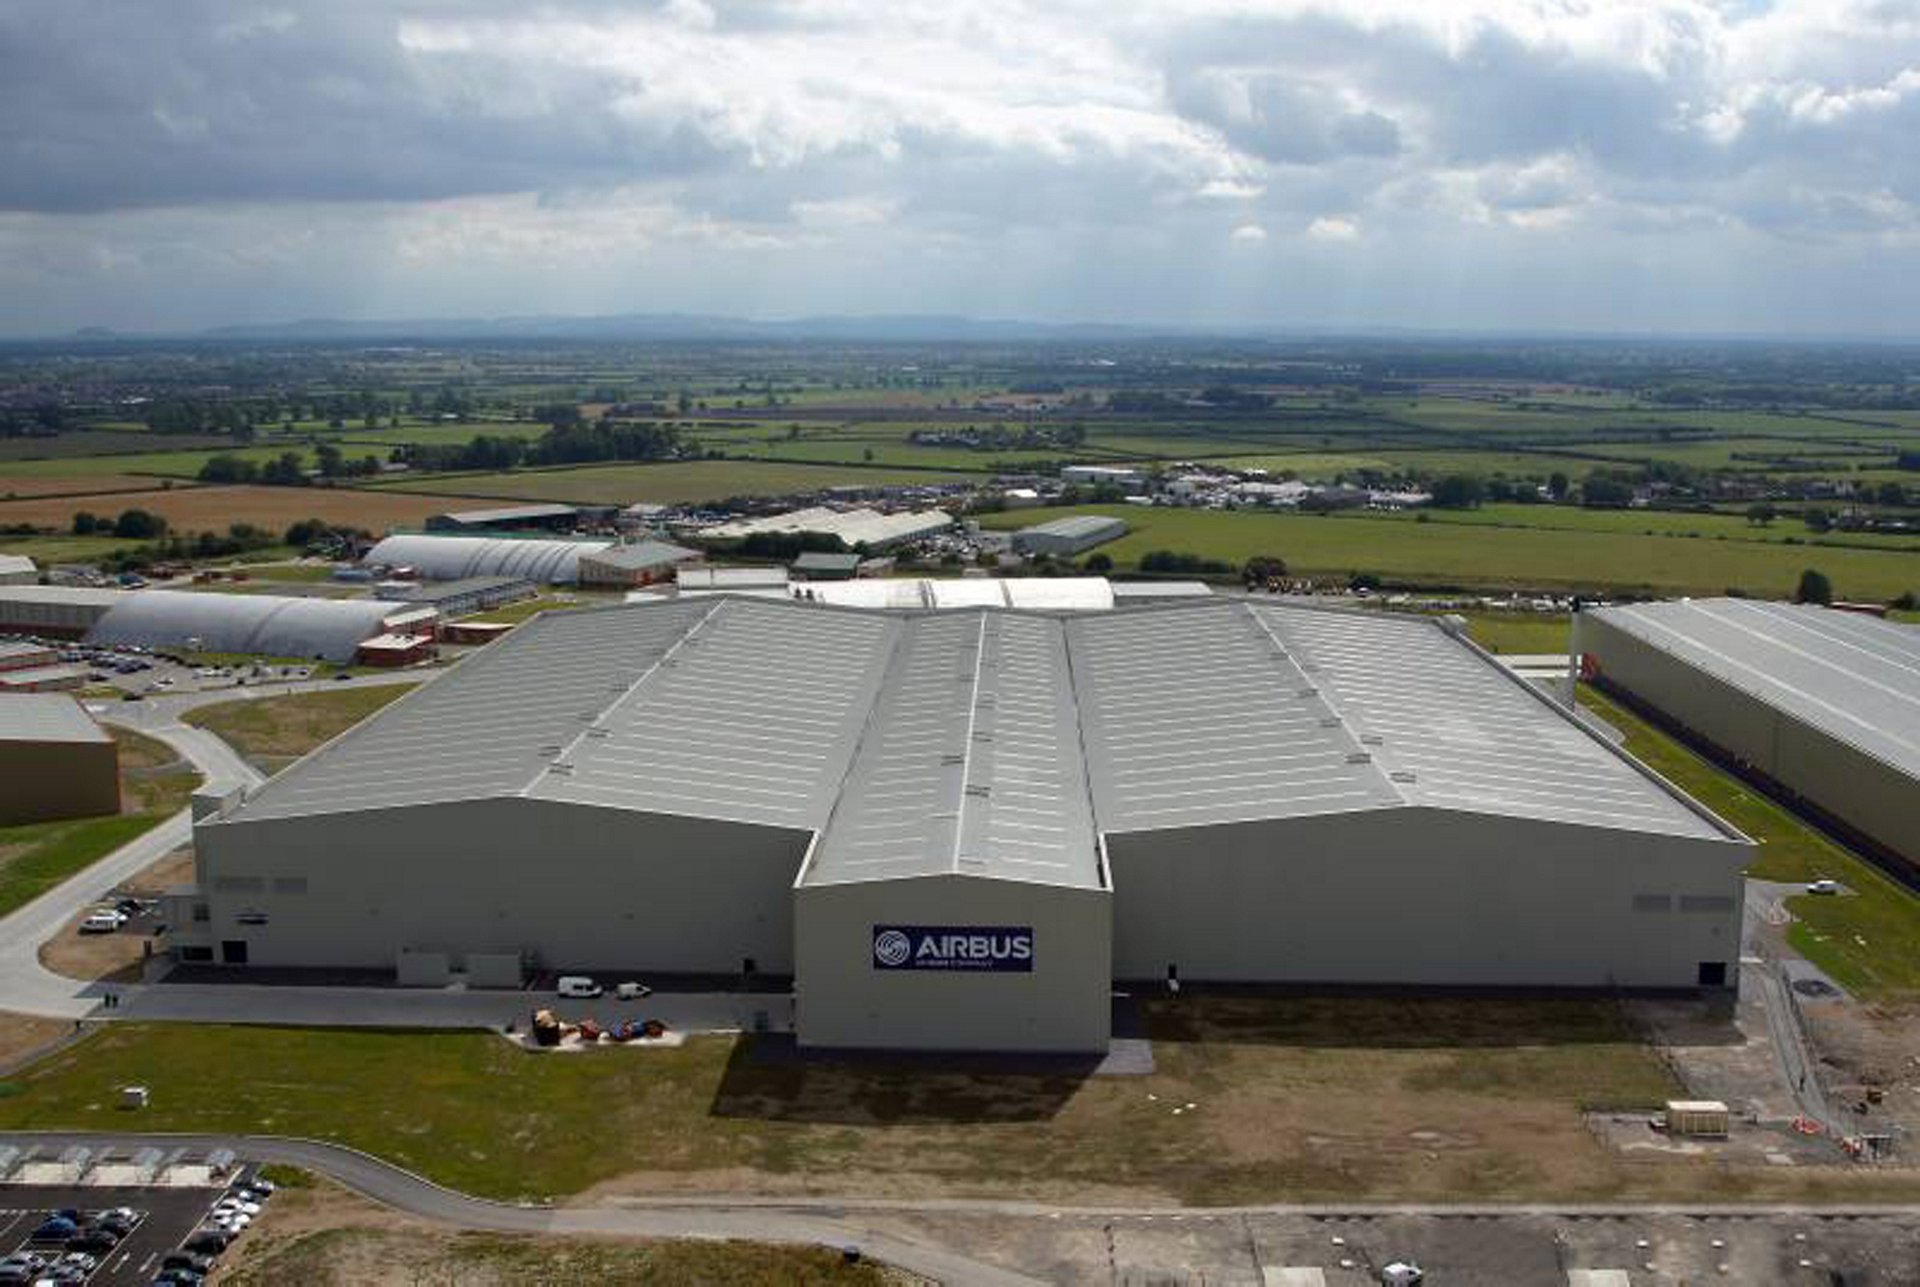 Resultado de imagen para Airbus factory UK